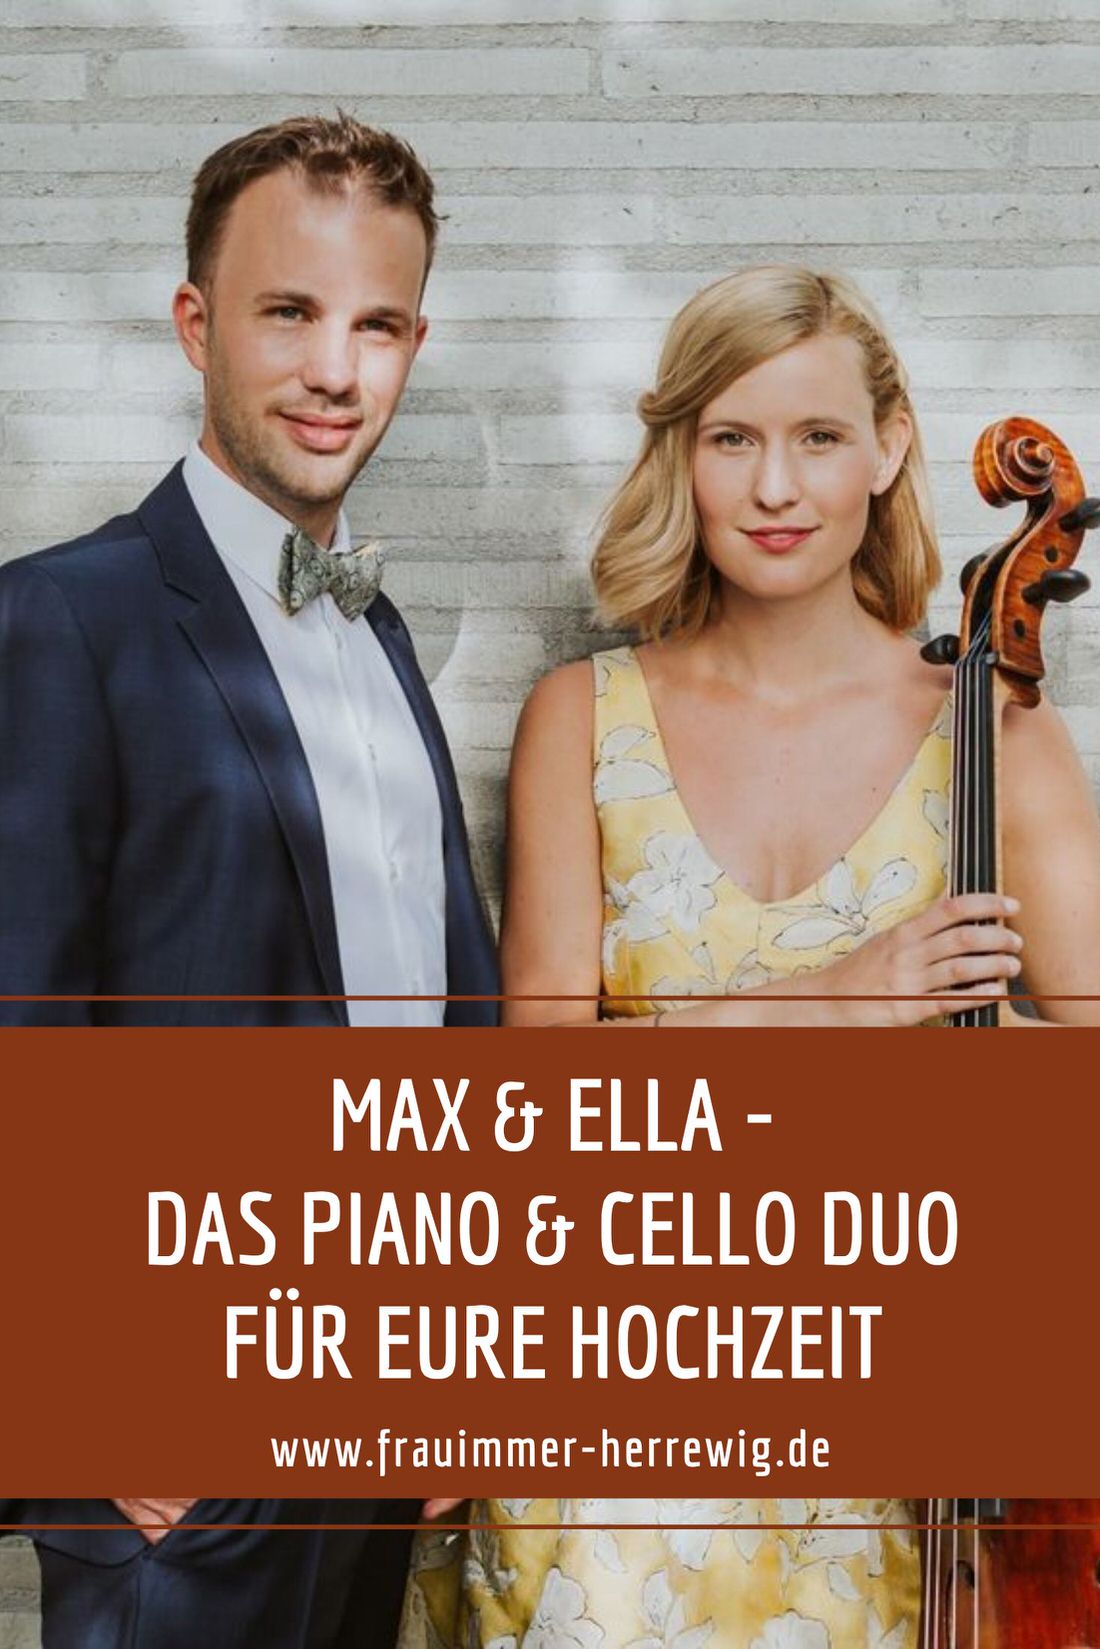 Hochzeit musik duo – gesehen bei frauimmer-herrewig.de